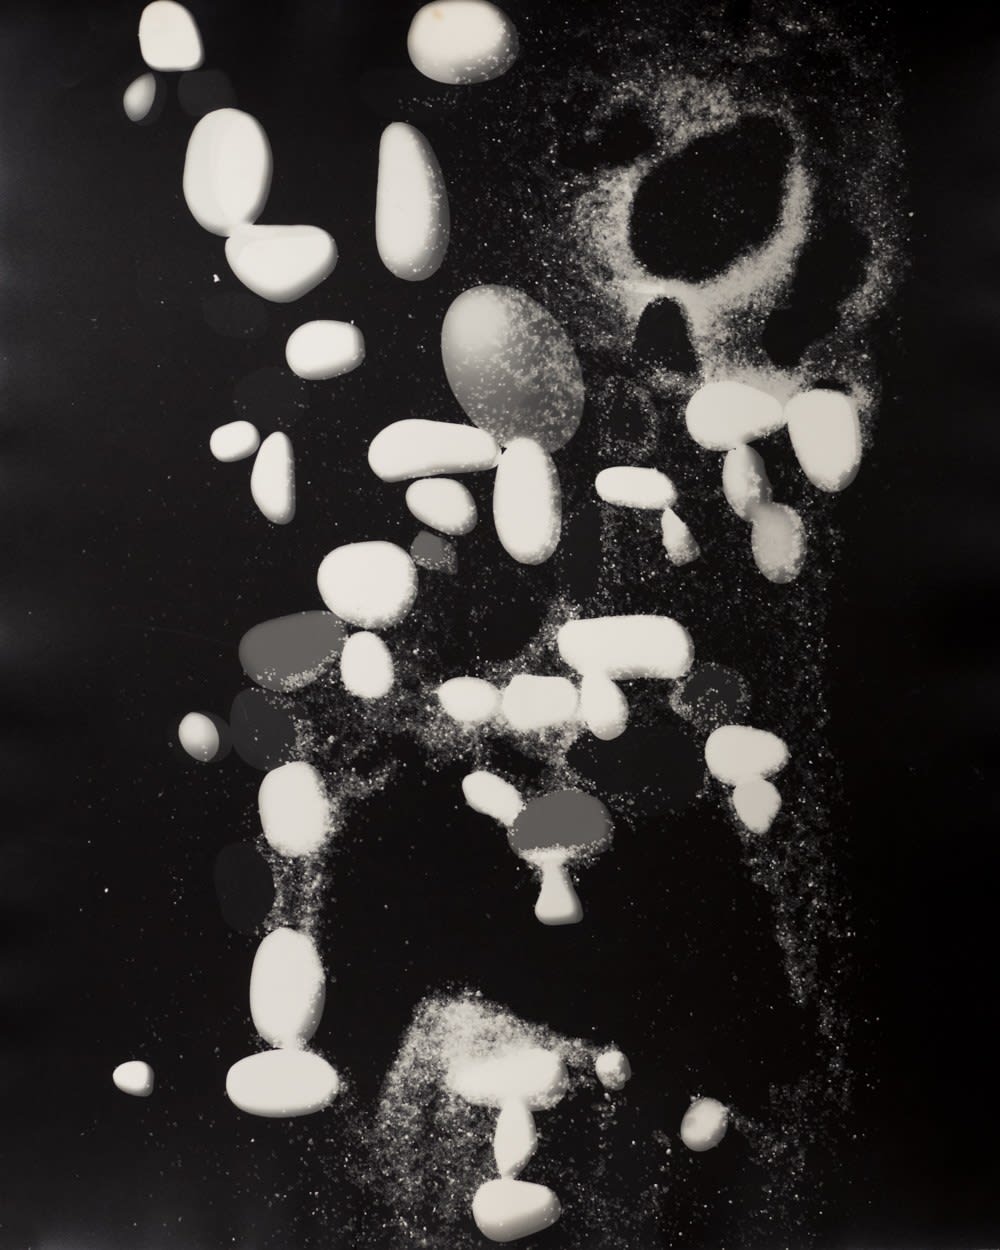 György Kepes, Untitled photogram, 1981